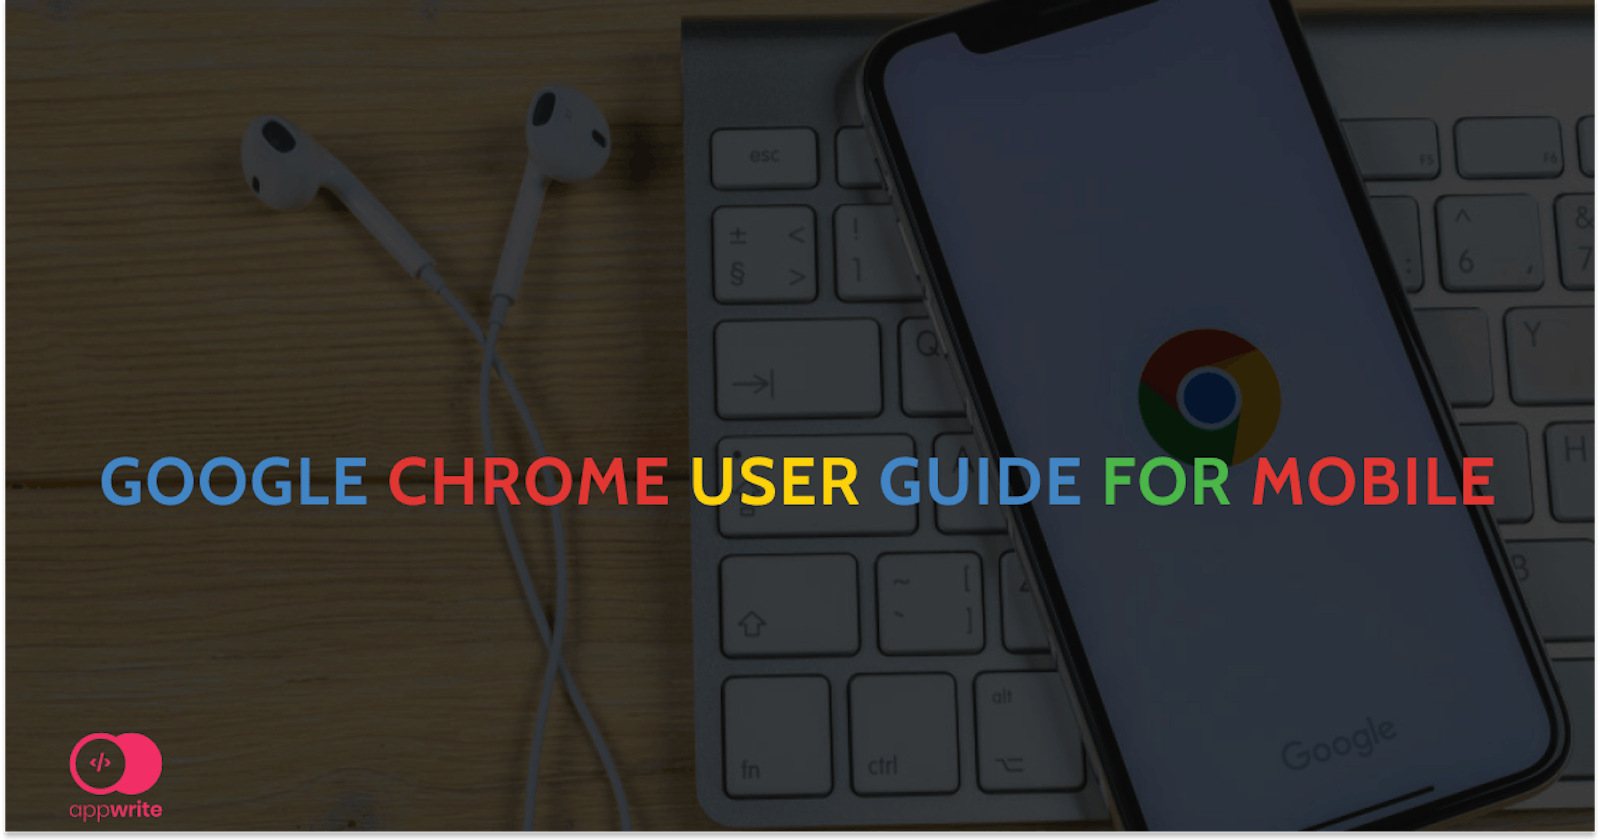 Google Chrome user guide for mobile